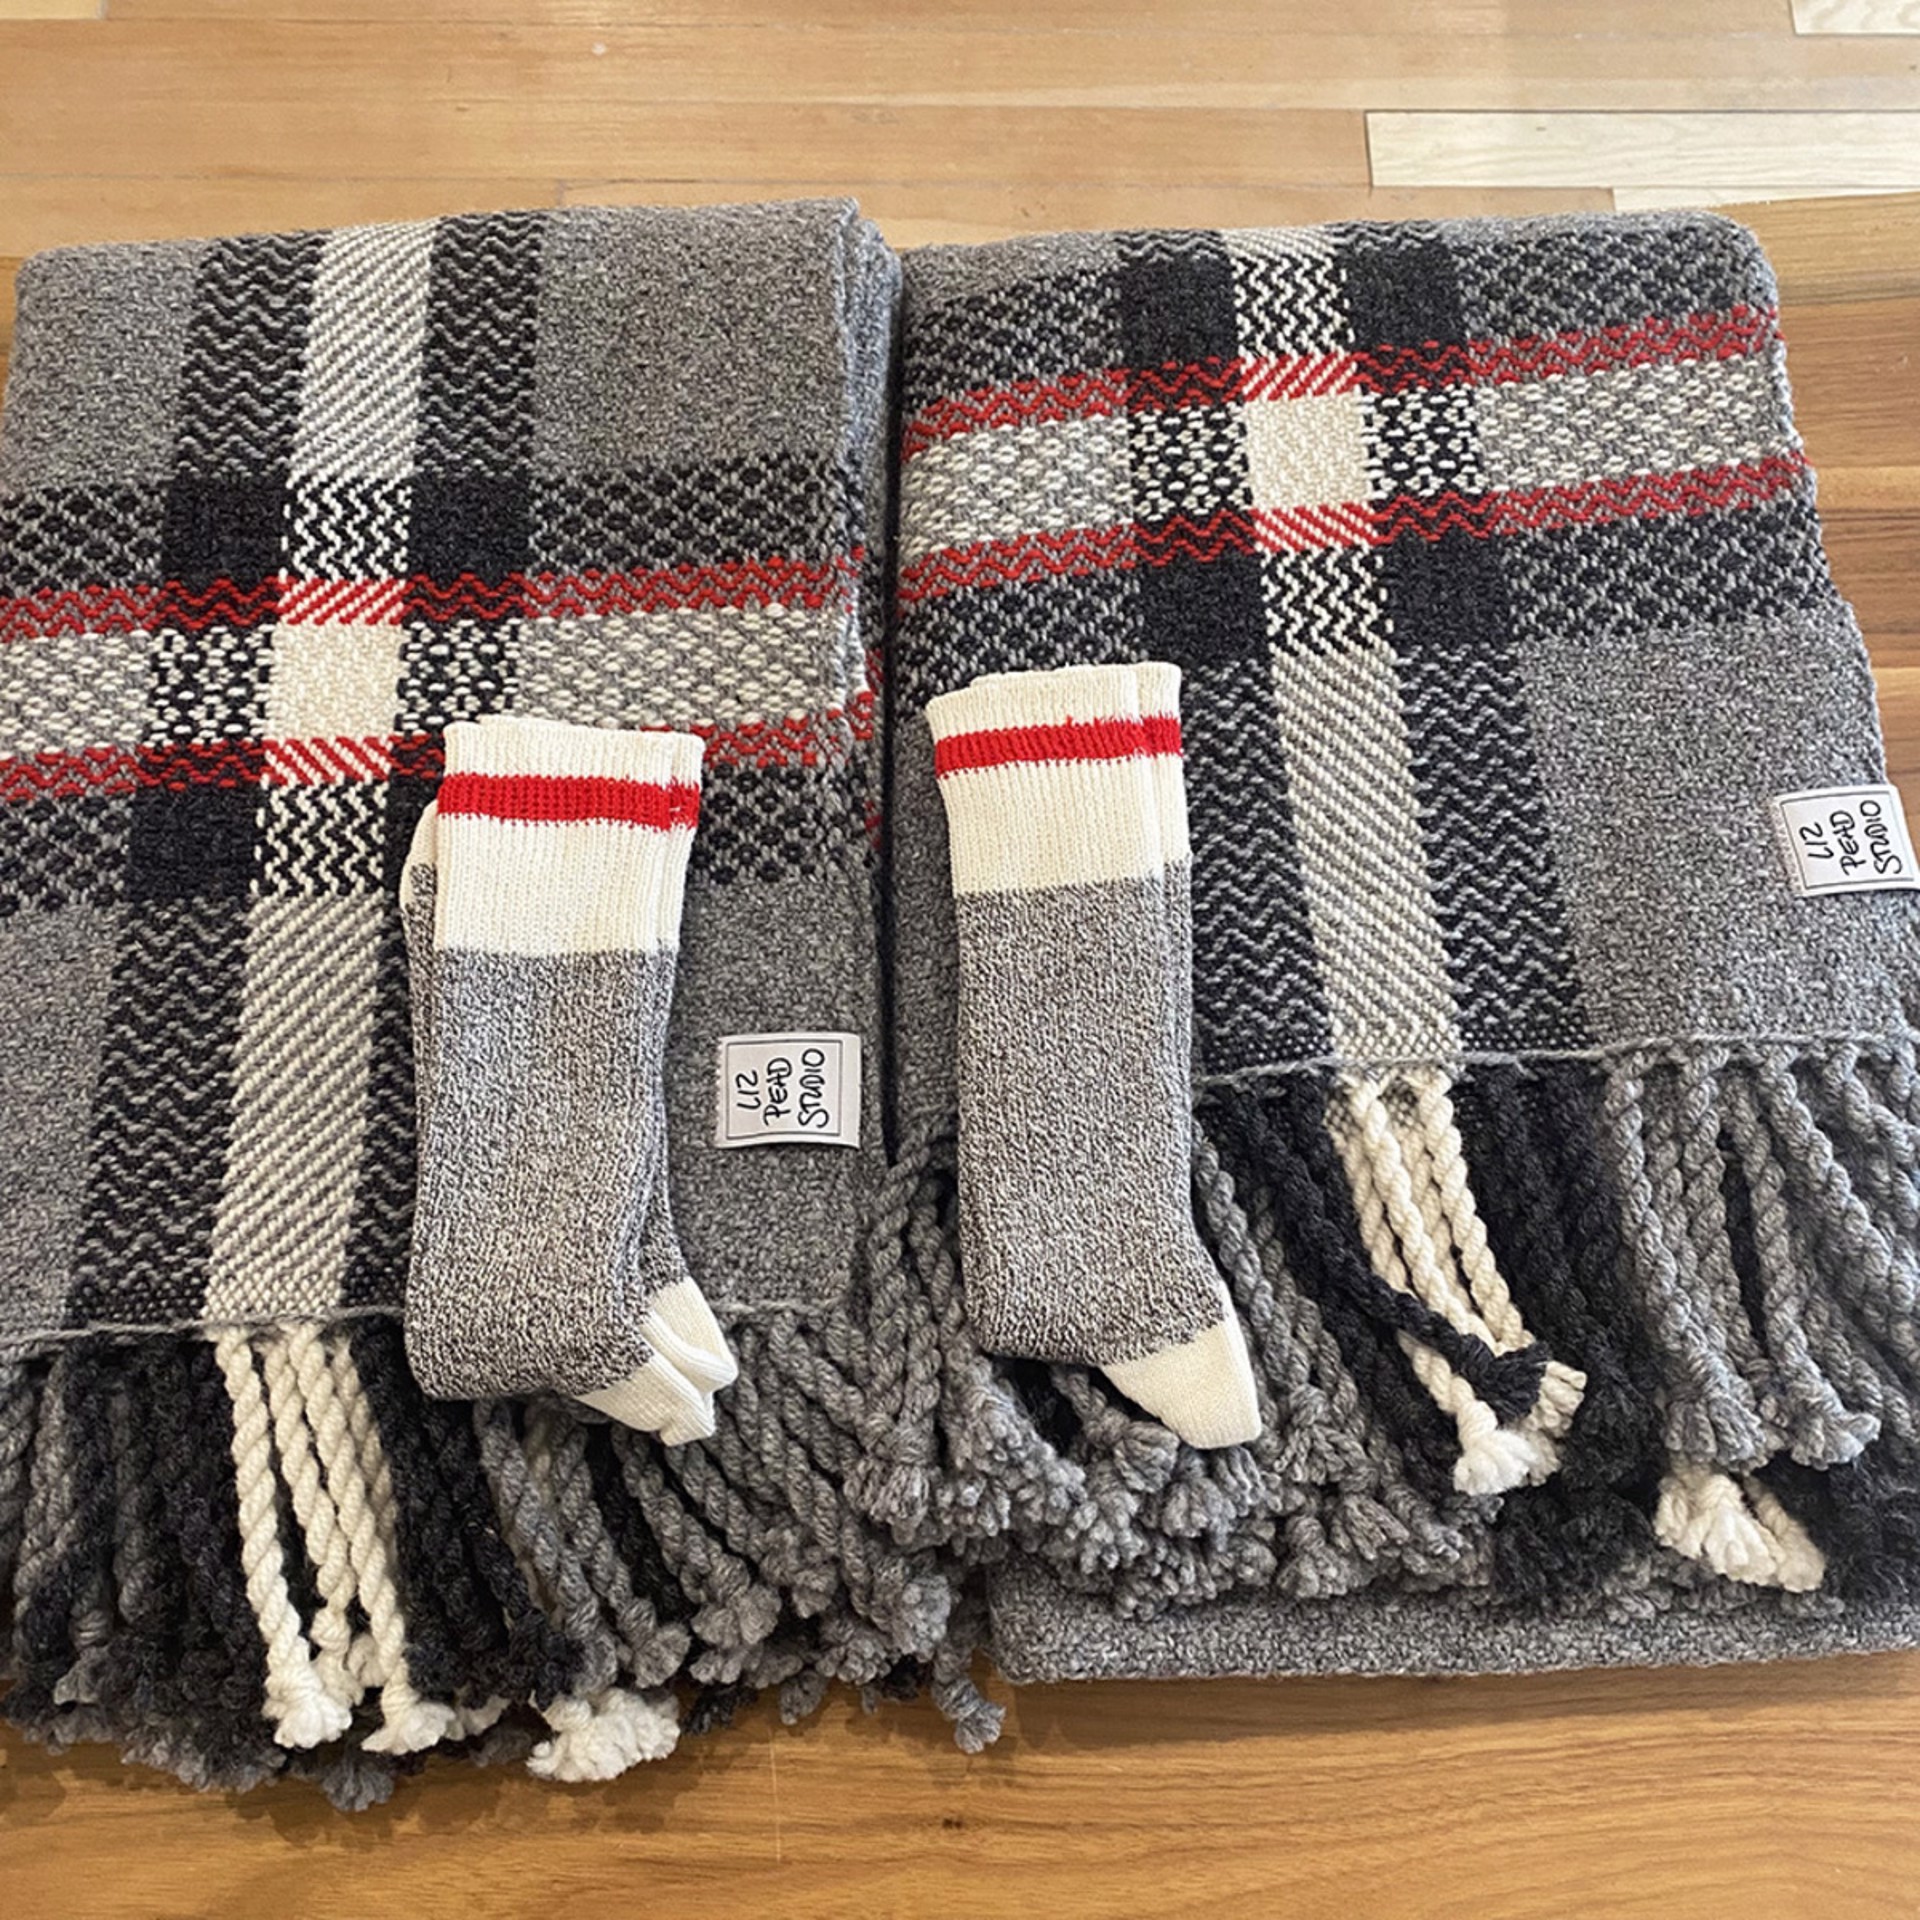 Wool Sock Blanket (with a pair of wool socks!) by Liz Pead